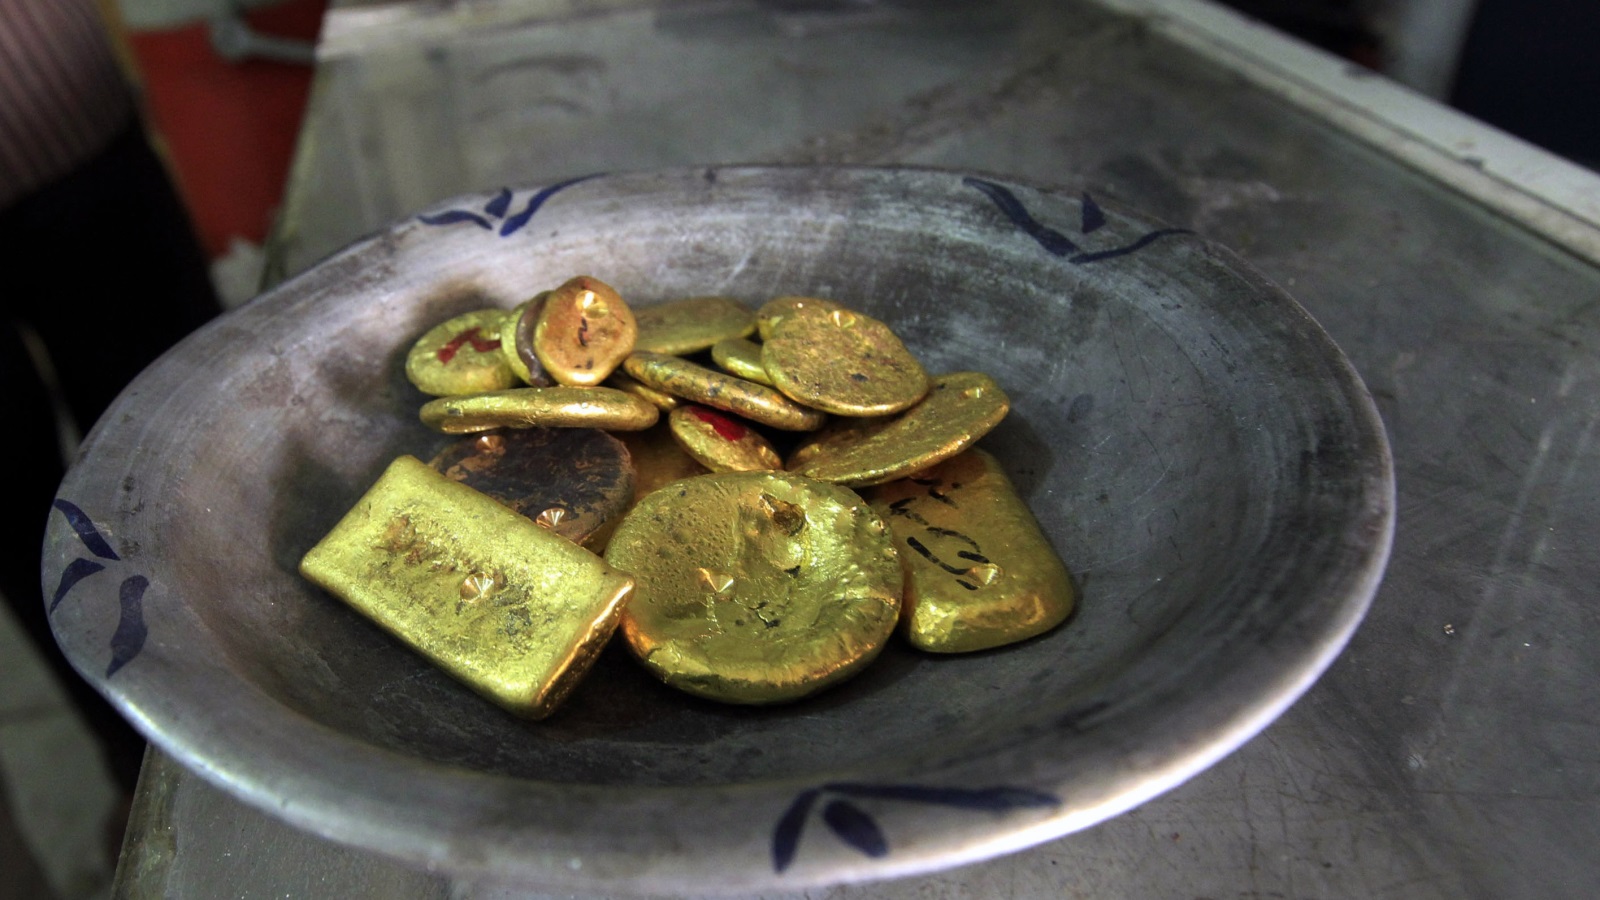 يصل الإنتاج السنوي للسودان من الذهب إلى 200 طن تُقدَّر قيمتها بما بين 7-8 مليارات دولار، وهو مبلغ كان يمكنه أن يُنقذ البلاد من شح سيولة نقدية